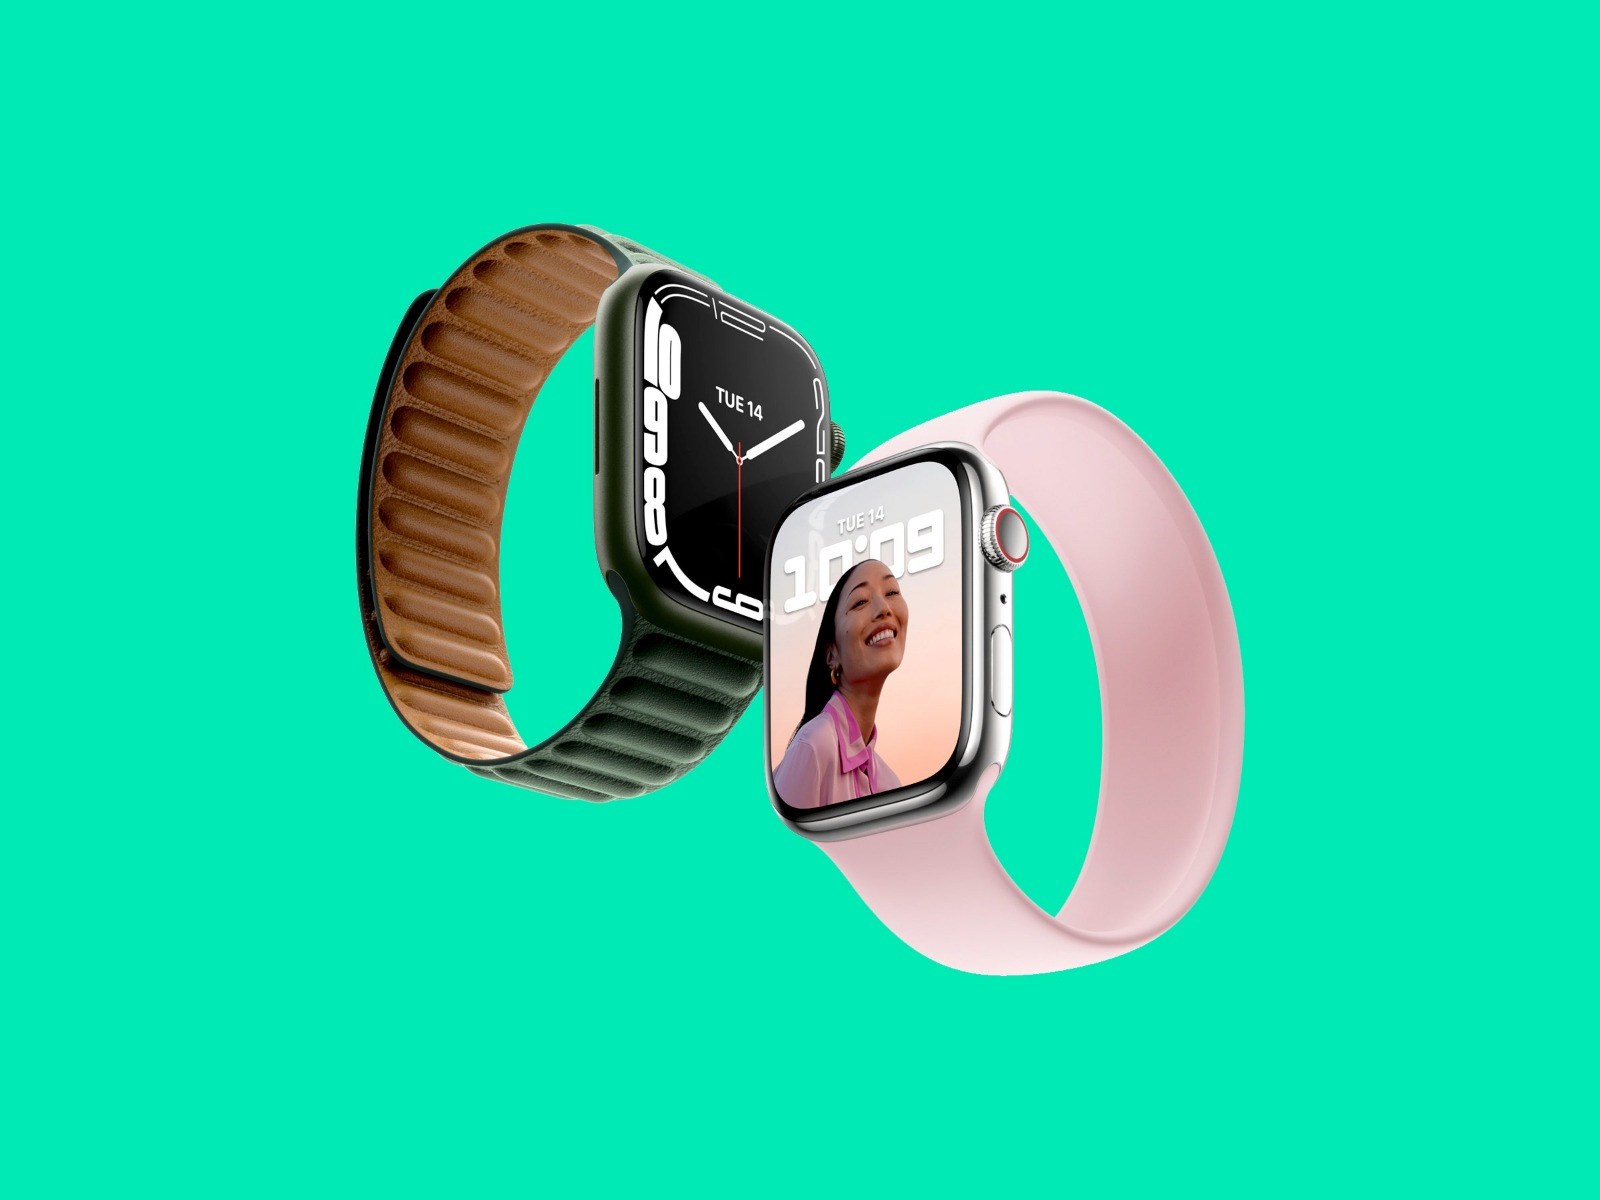 Uygun fiyatlı Apple Watch SE 2 bu yıl piyasaya sürülebilir